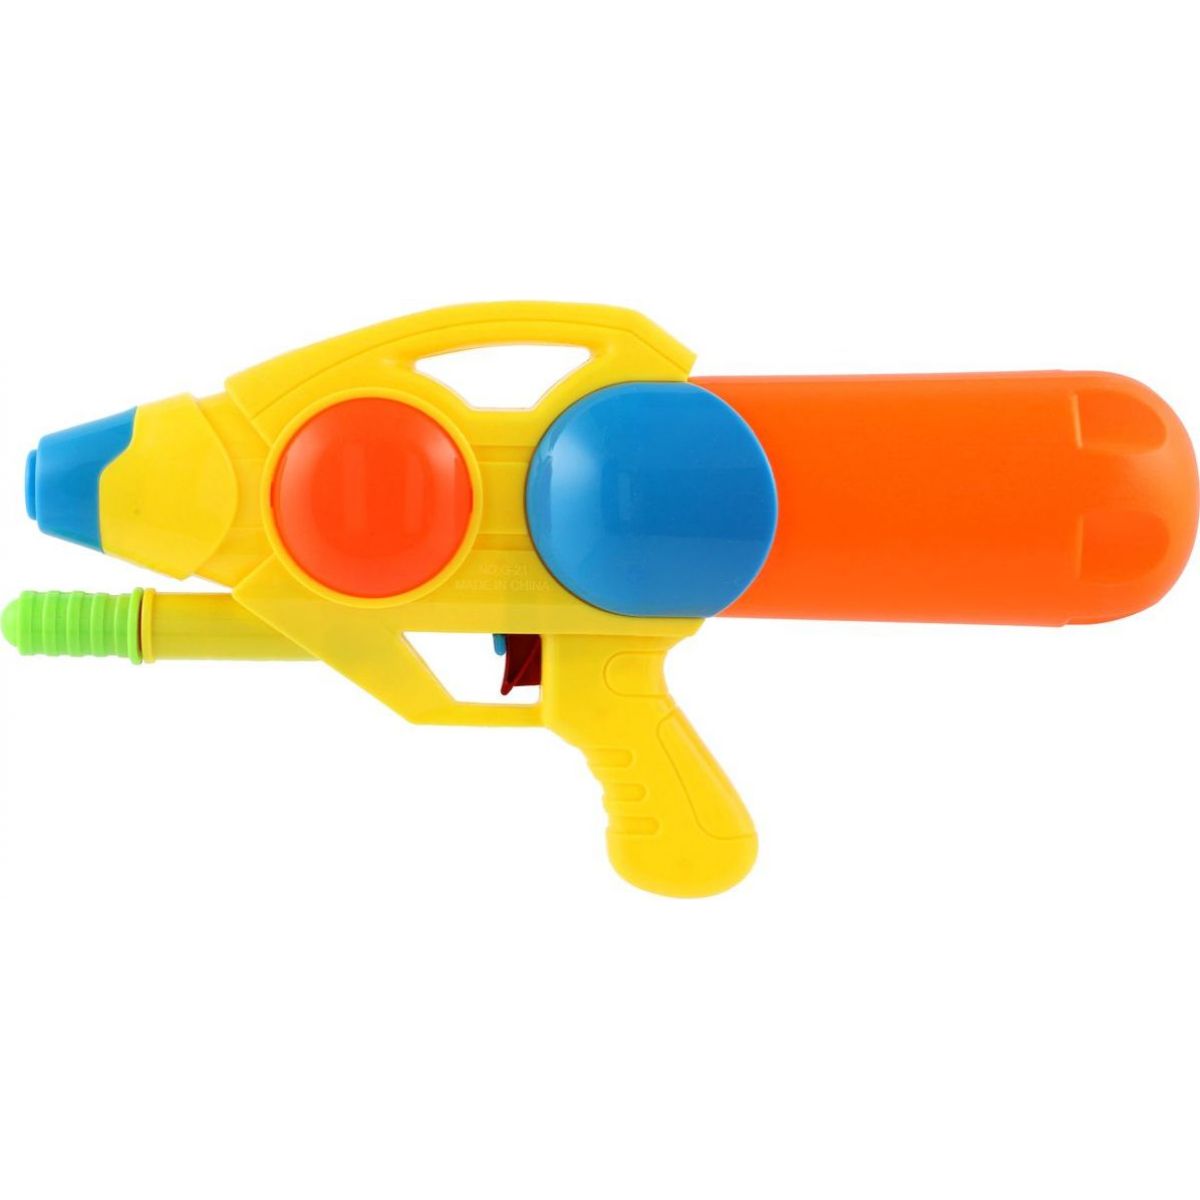 Teddies Vodní pistole plast 33 cm žluto-oranžová